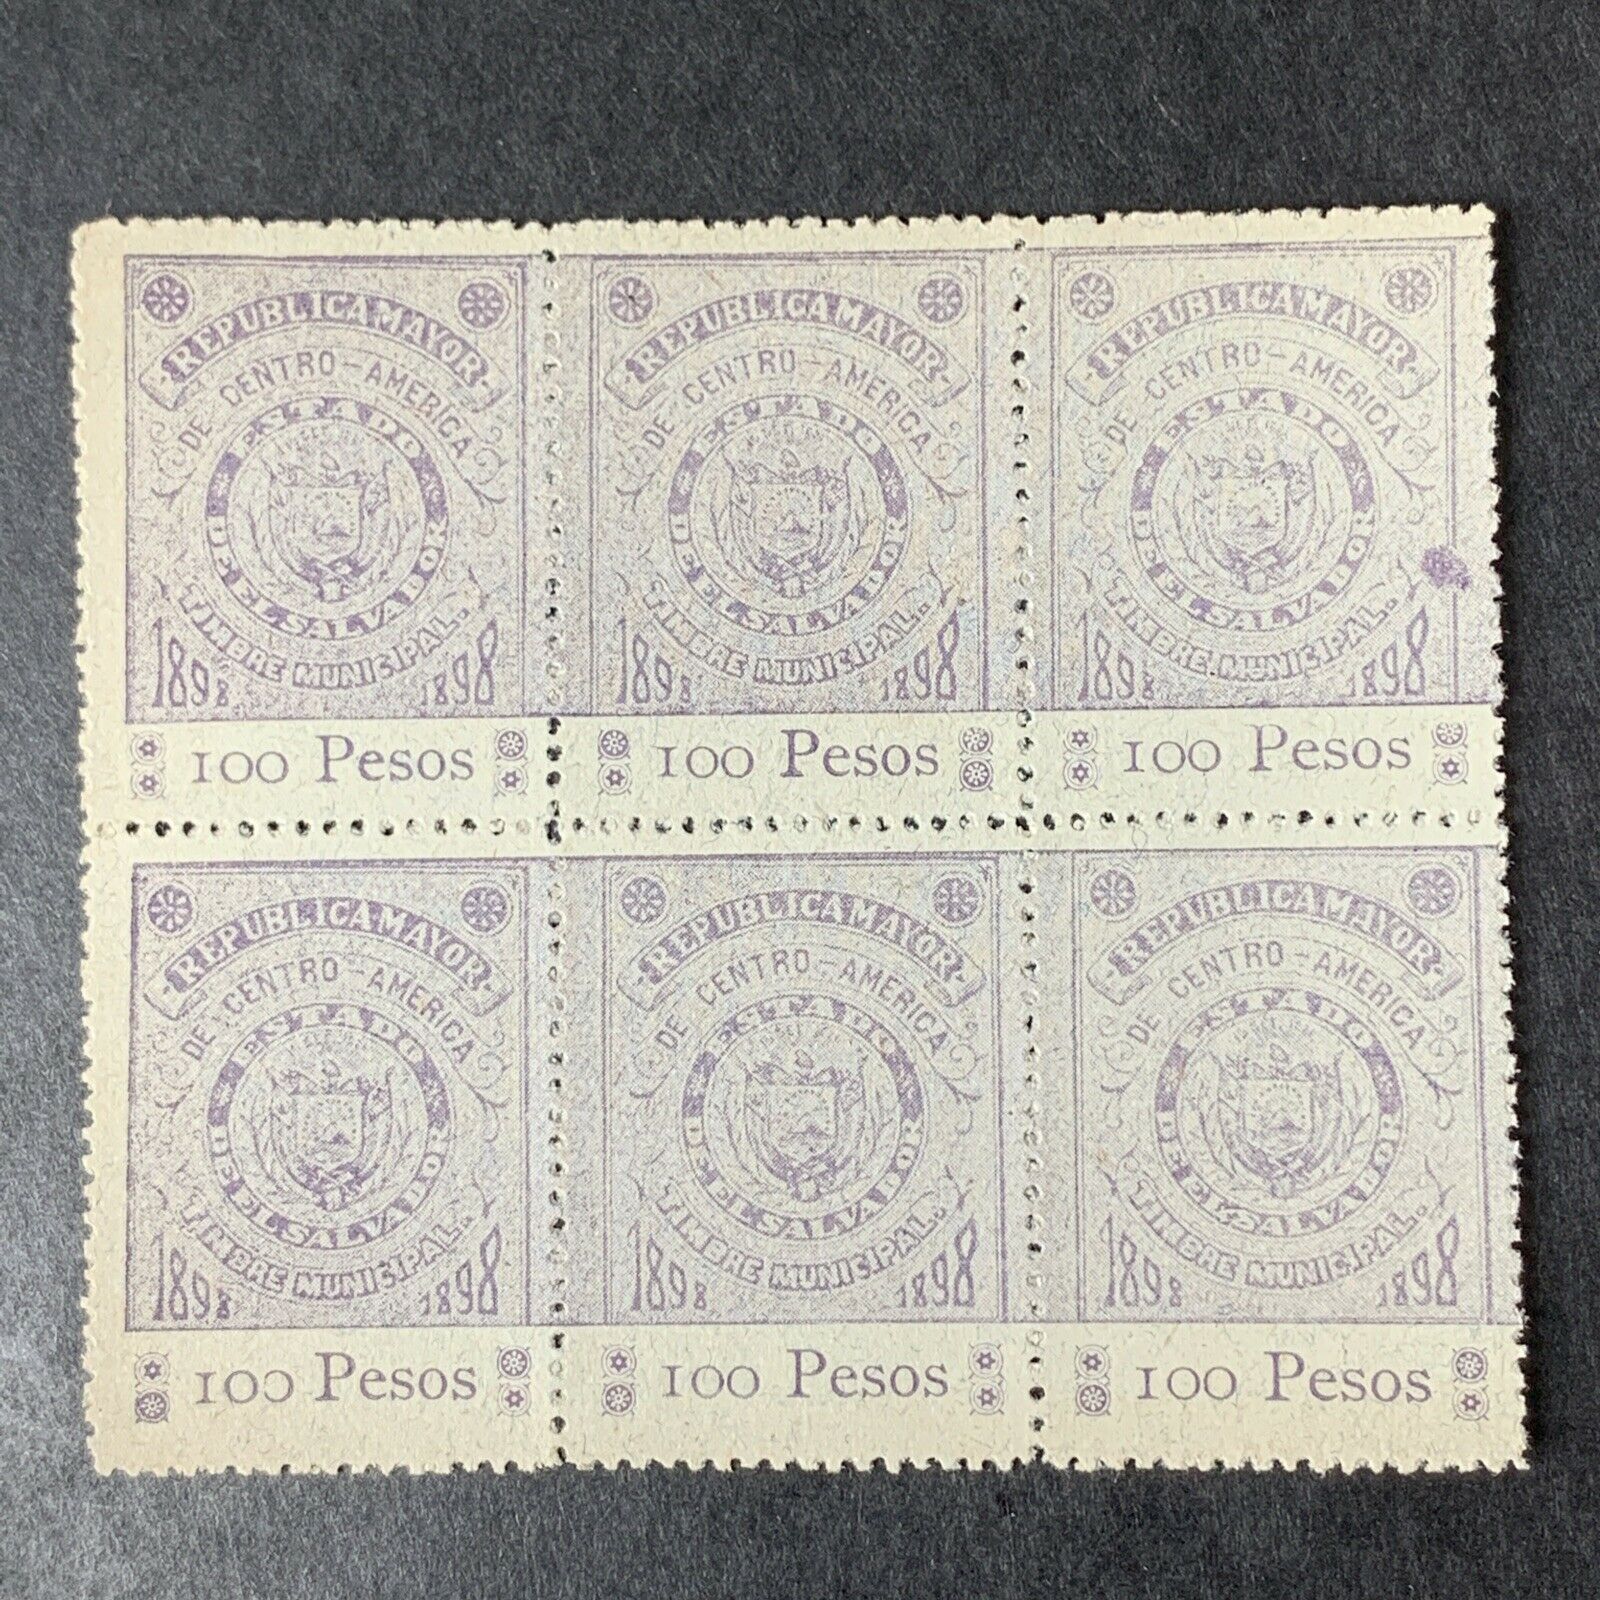 O8/12 El Salvador Stamp Revenue 1898 100 Peso Blocks Of 6 Mnhngai Very Rare